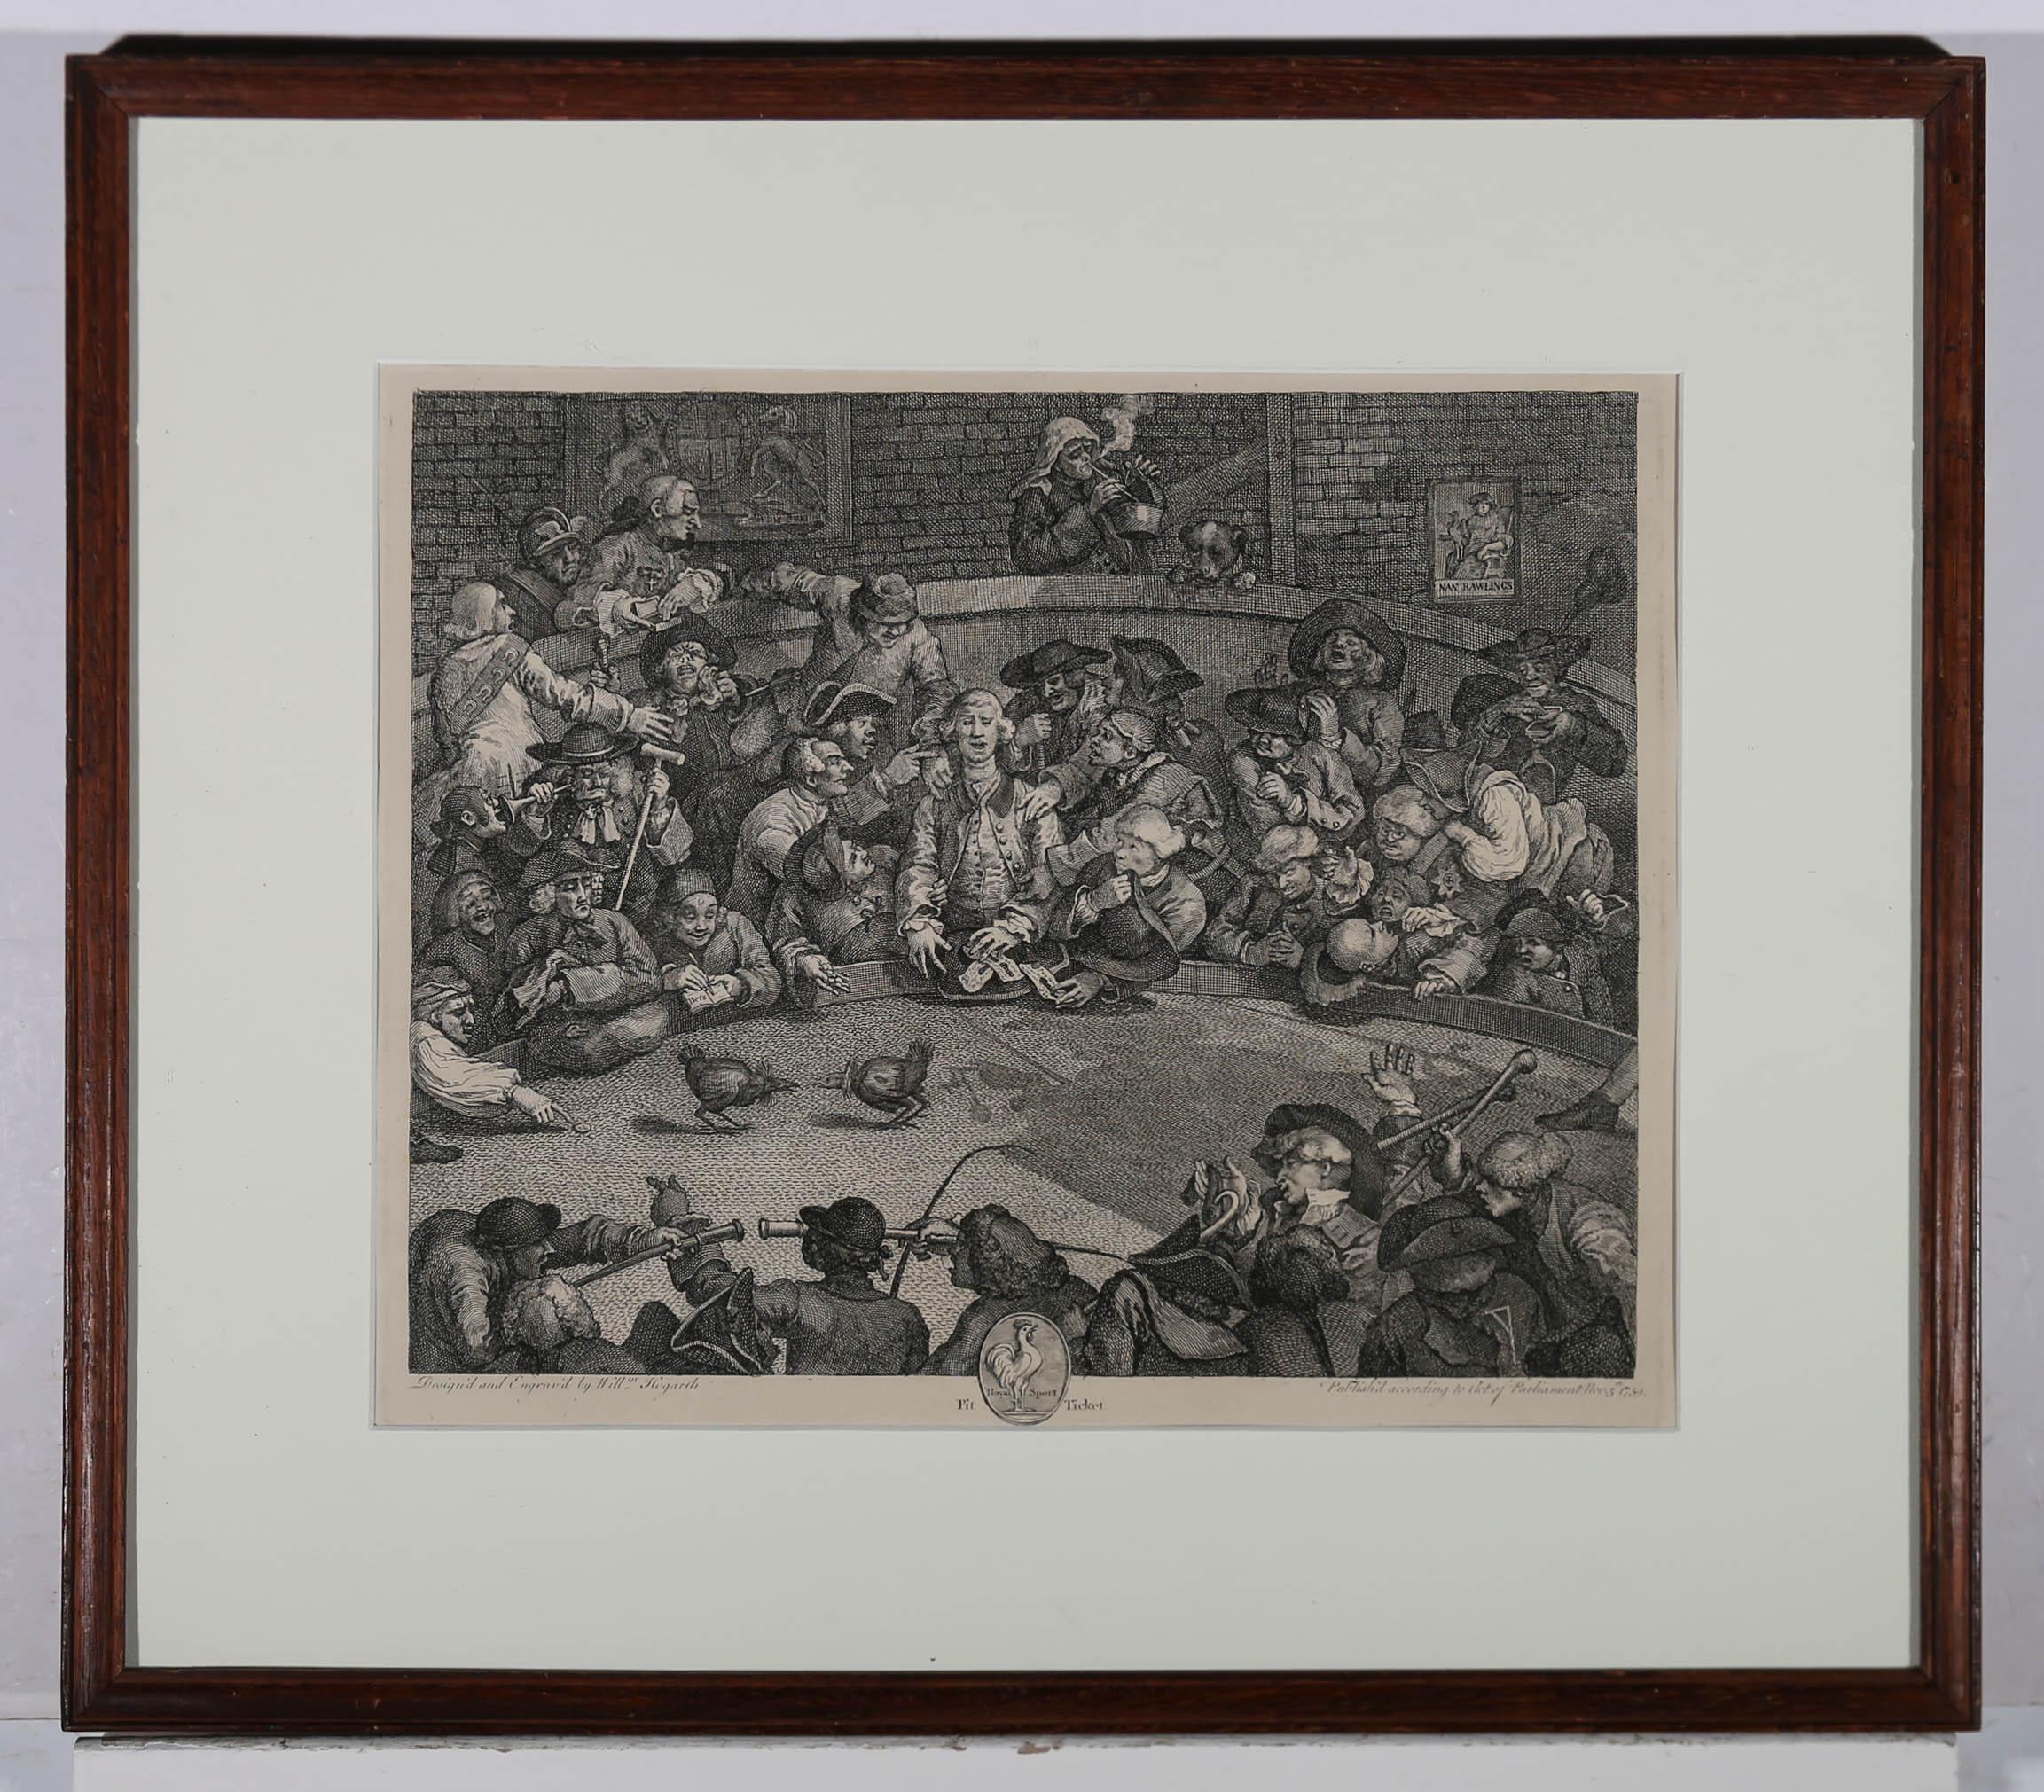 Une belle réimpression du 19ème siècle de la plaque originale de William Hogarth. La scène montre une fosse bruyante autour d'un ring de combat de coqs, avec des badauds qui prennent et placent des paris, crient et provoquent une pagaille générale.